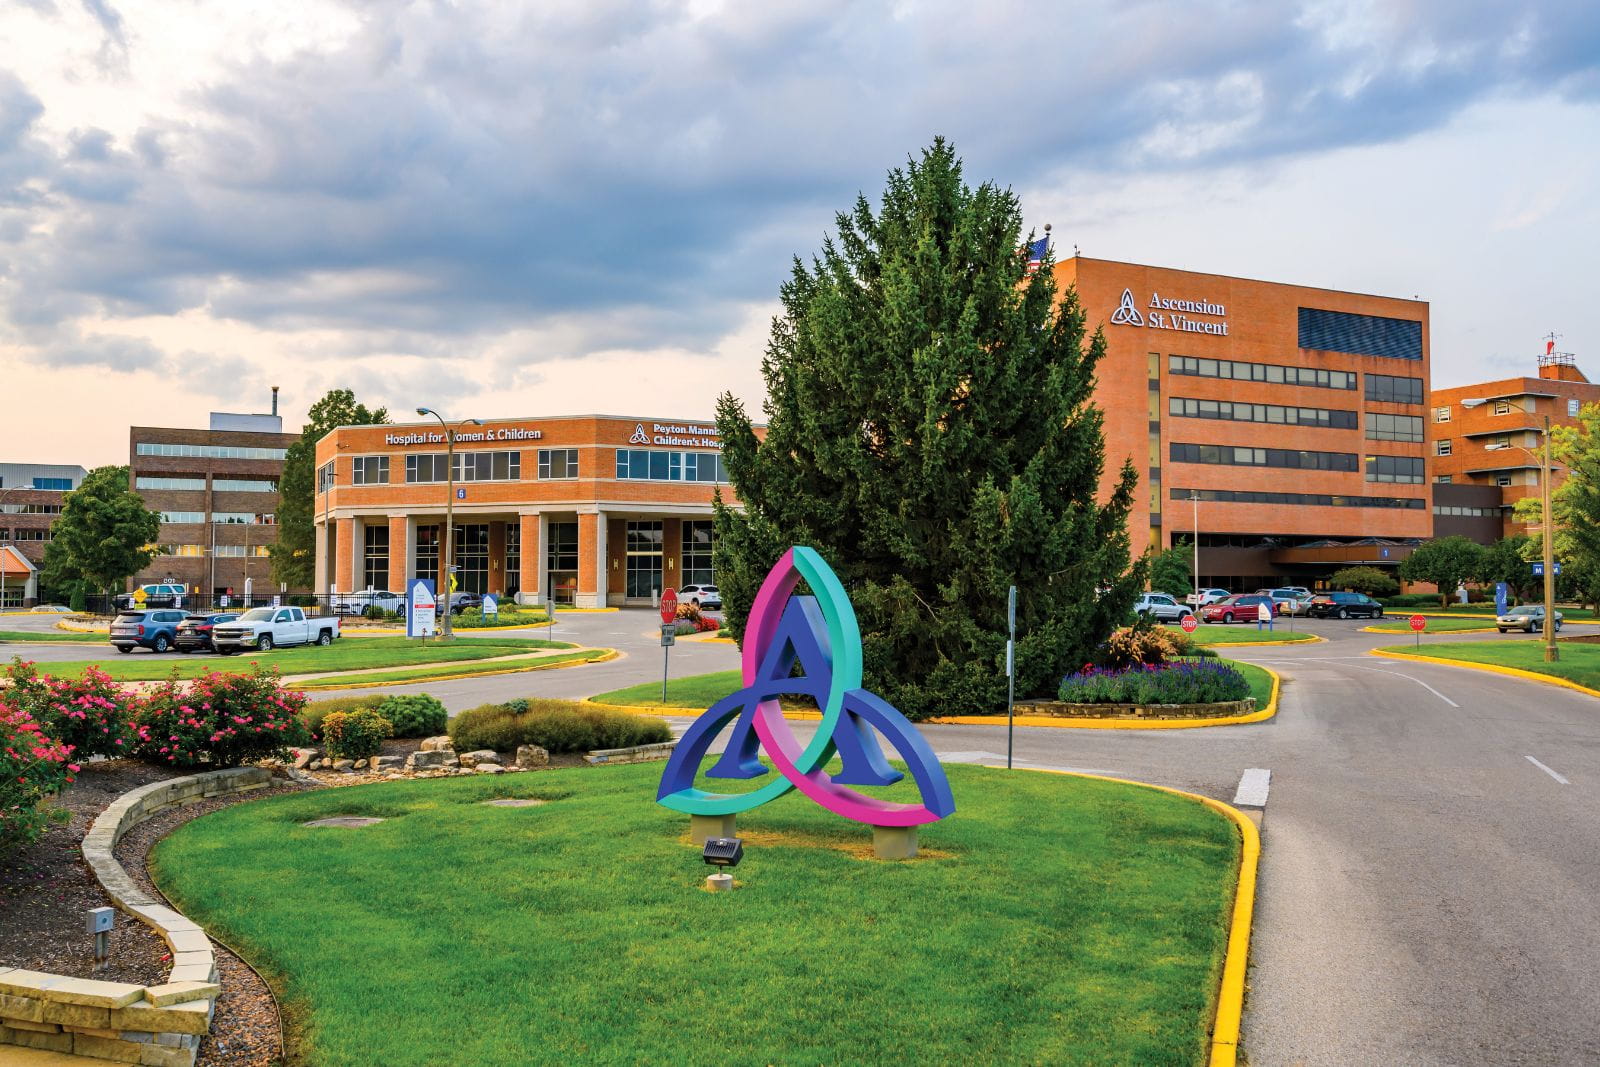 Peyton Manning Children’s Hospital Evansville at Ascension St. Vincent in Evansville, IN.